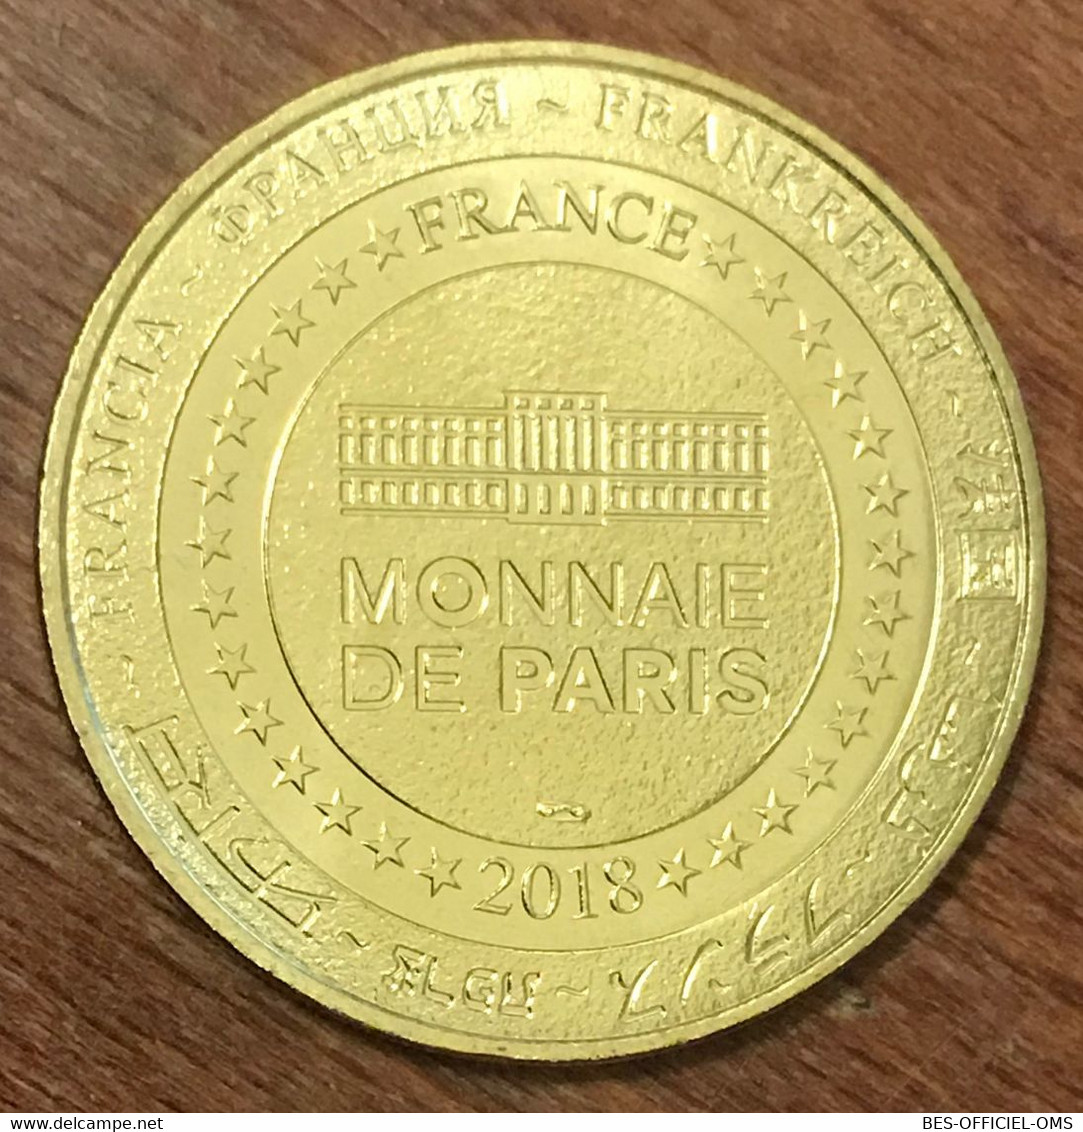 37 SEUILLY MUSÉE RABELAIS MEDAILLE SOUVENIR MONNAIE DE PARIS 2018 JETON TOURISTIQUE MEDALS COINS TOKENS - 2018